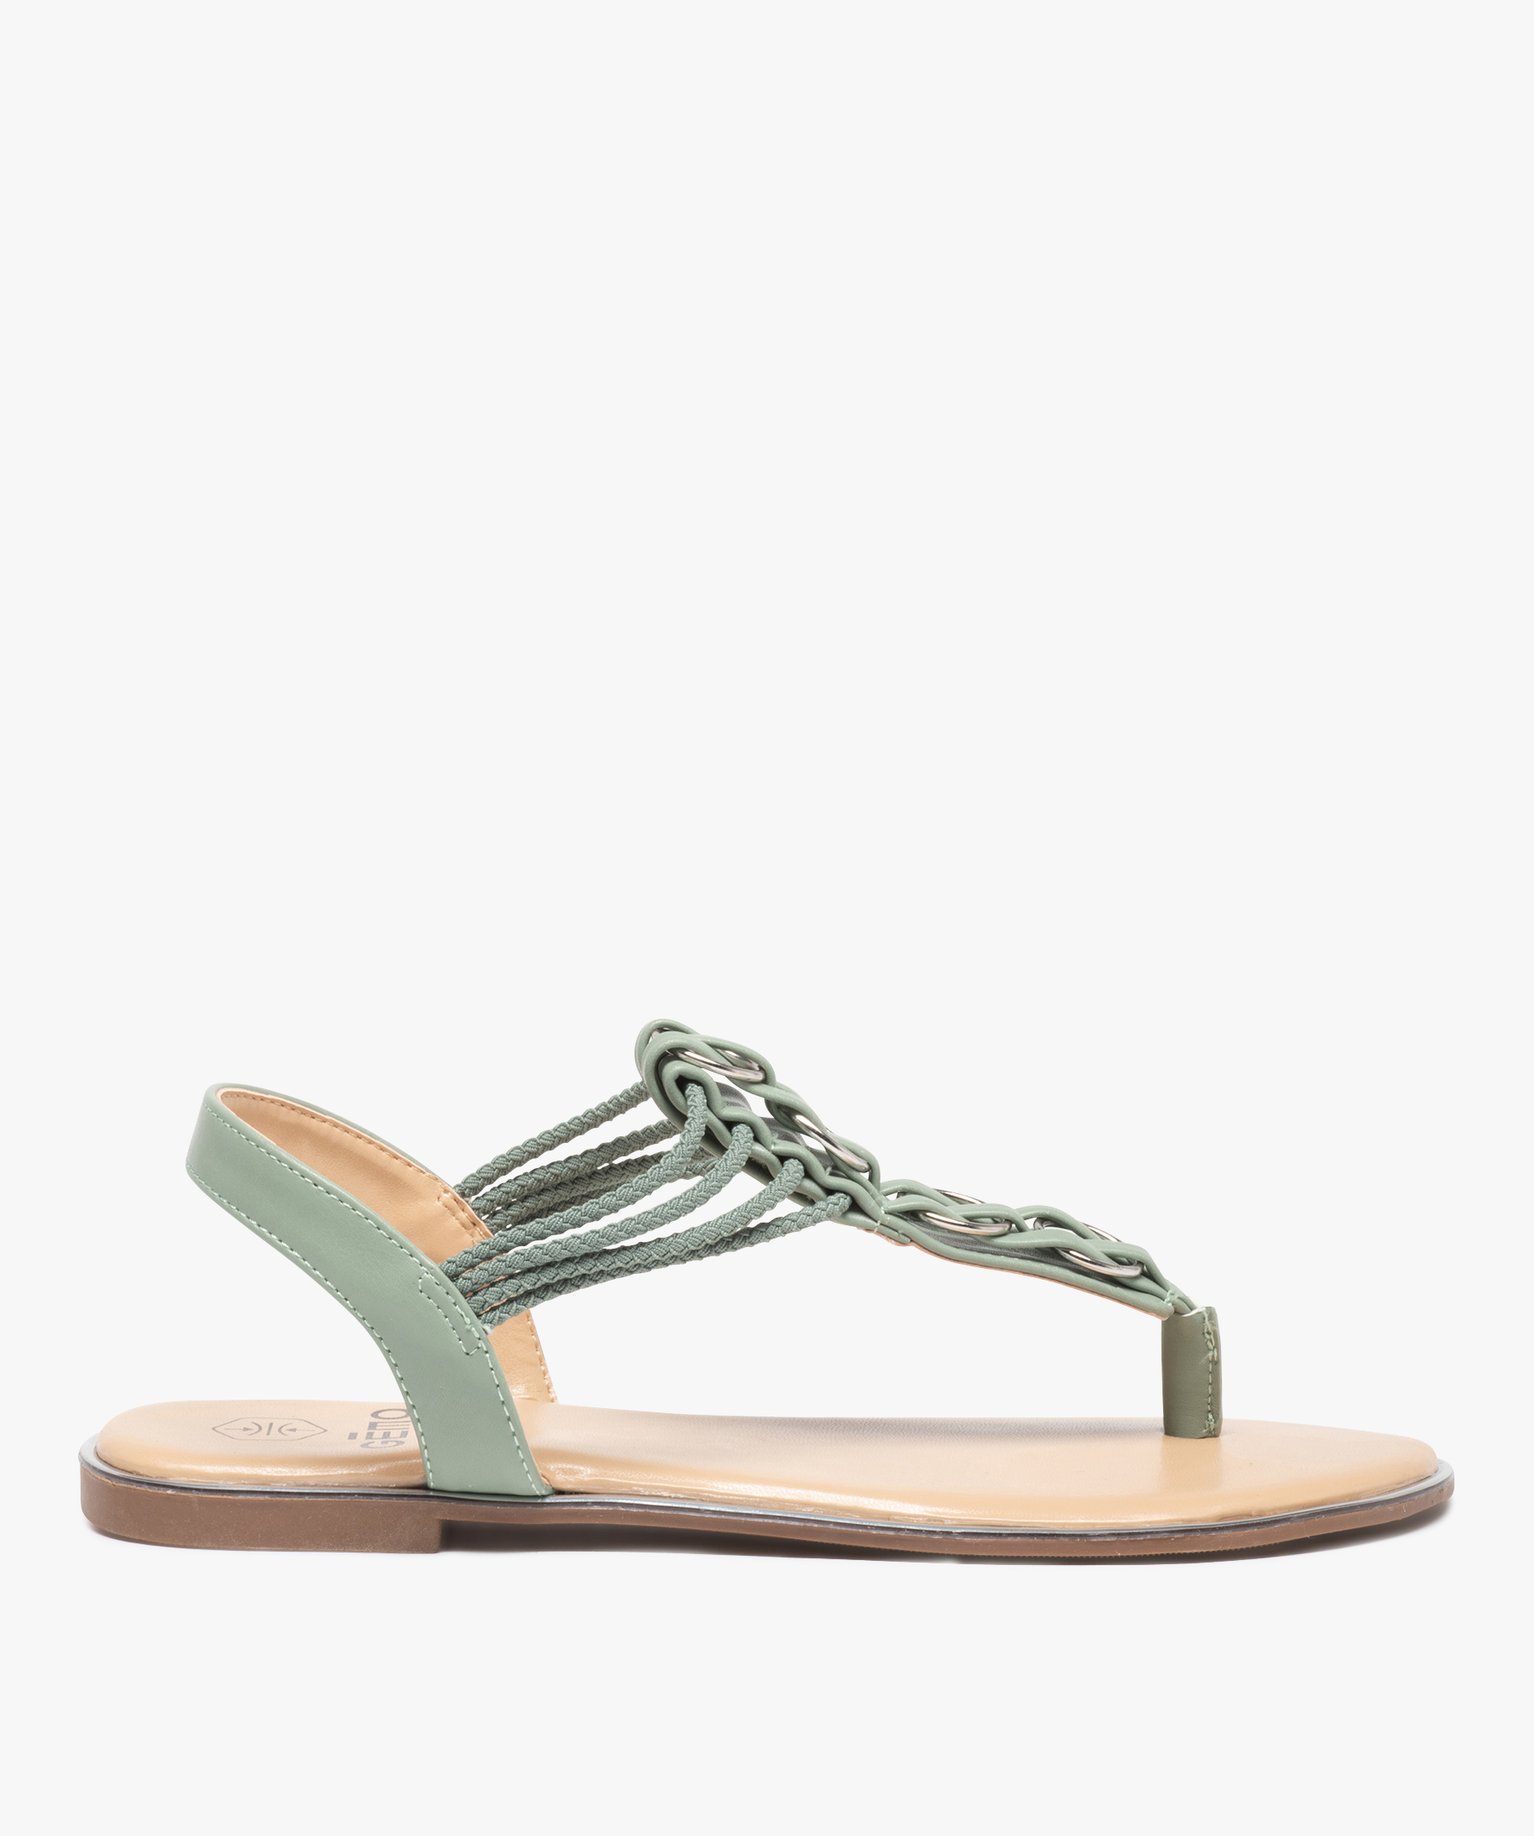 sandales femme a talon plat et entre-doigts details metal vert sandales plates et nu-pieds